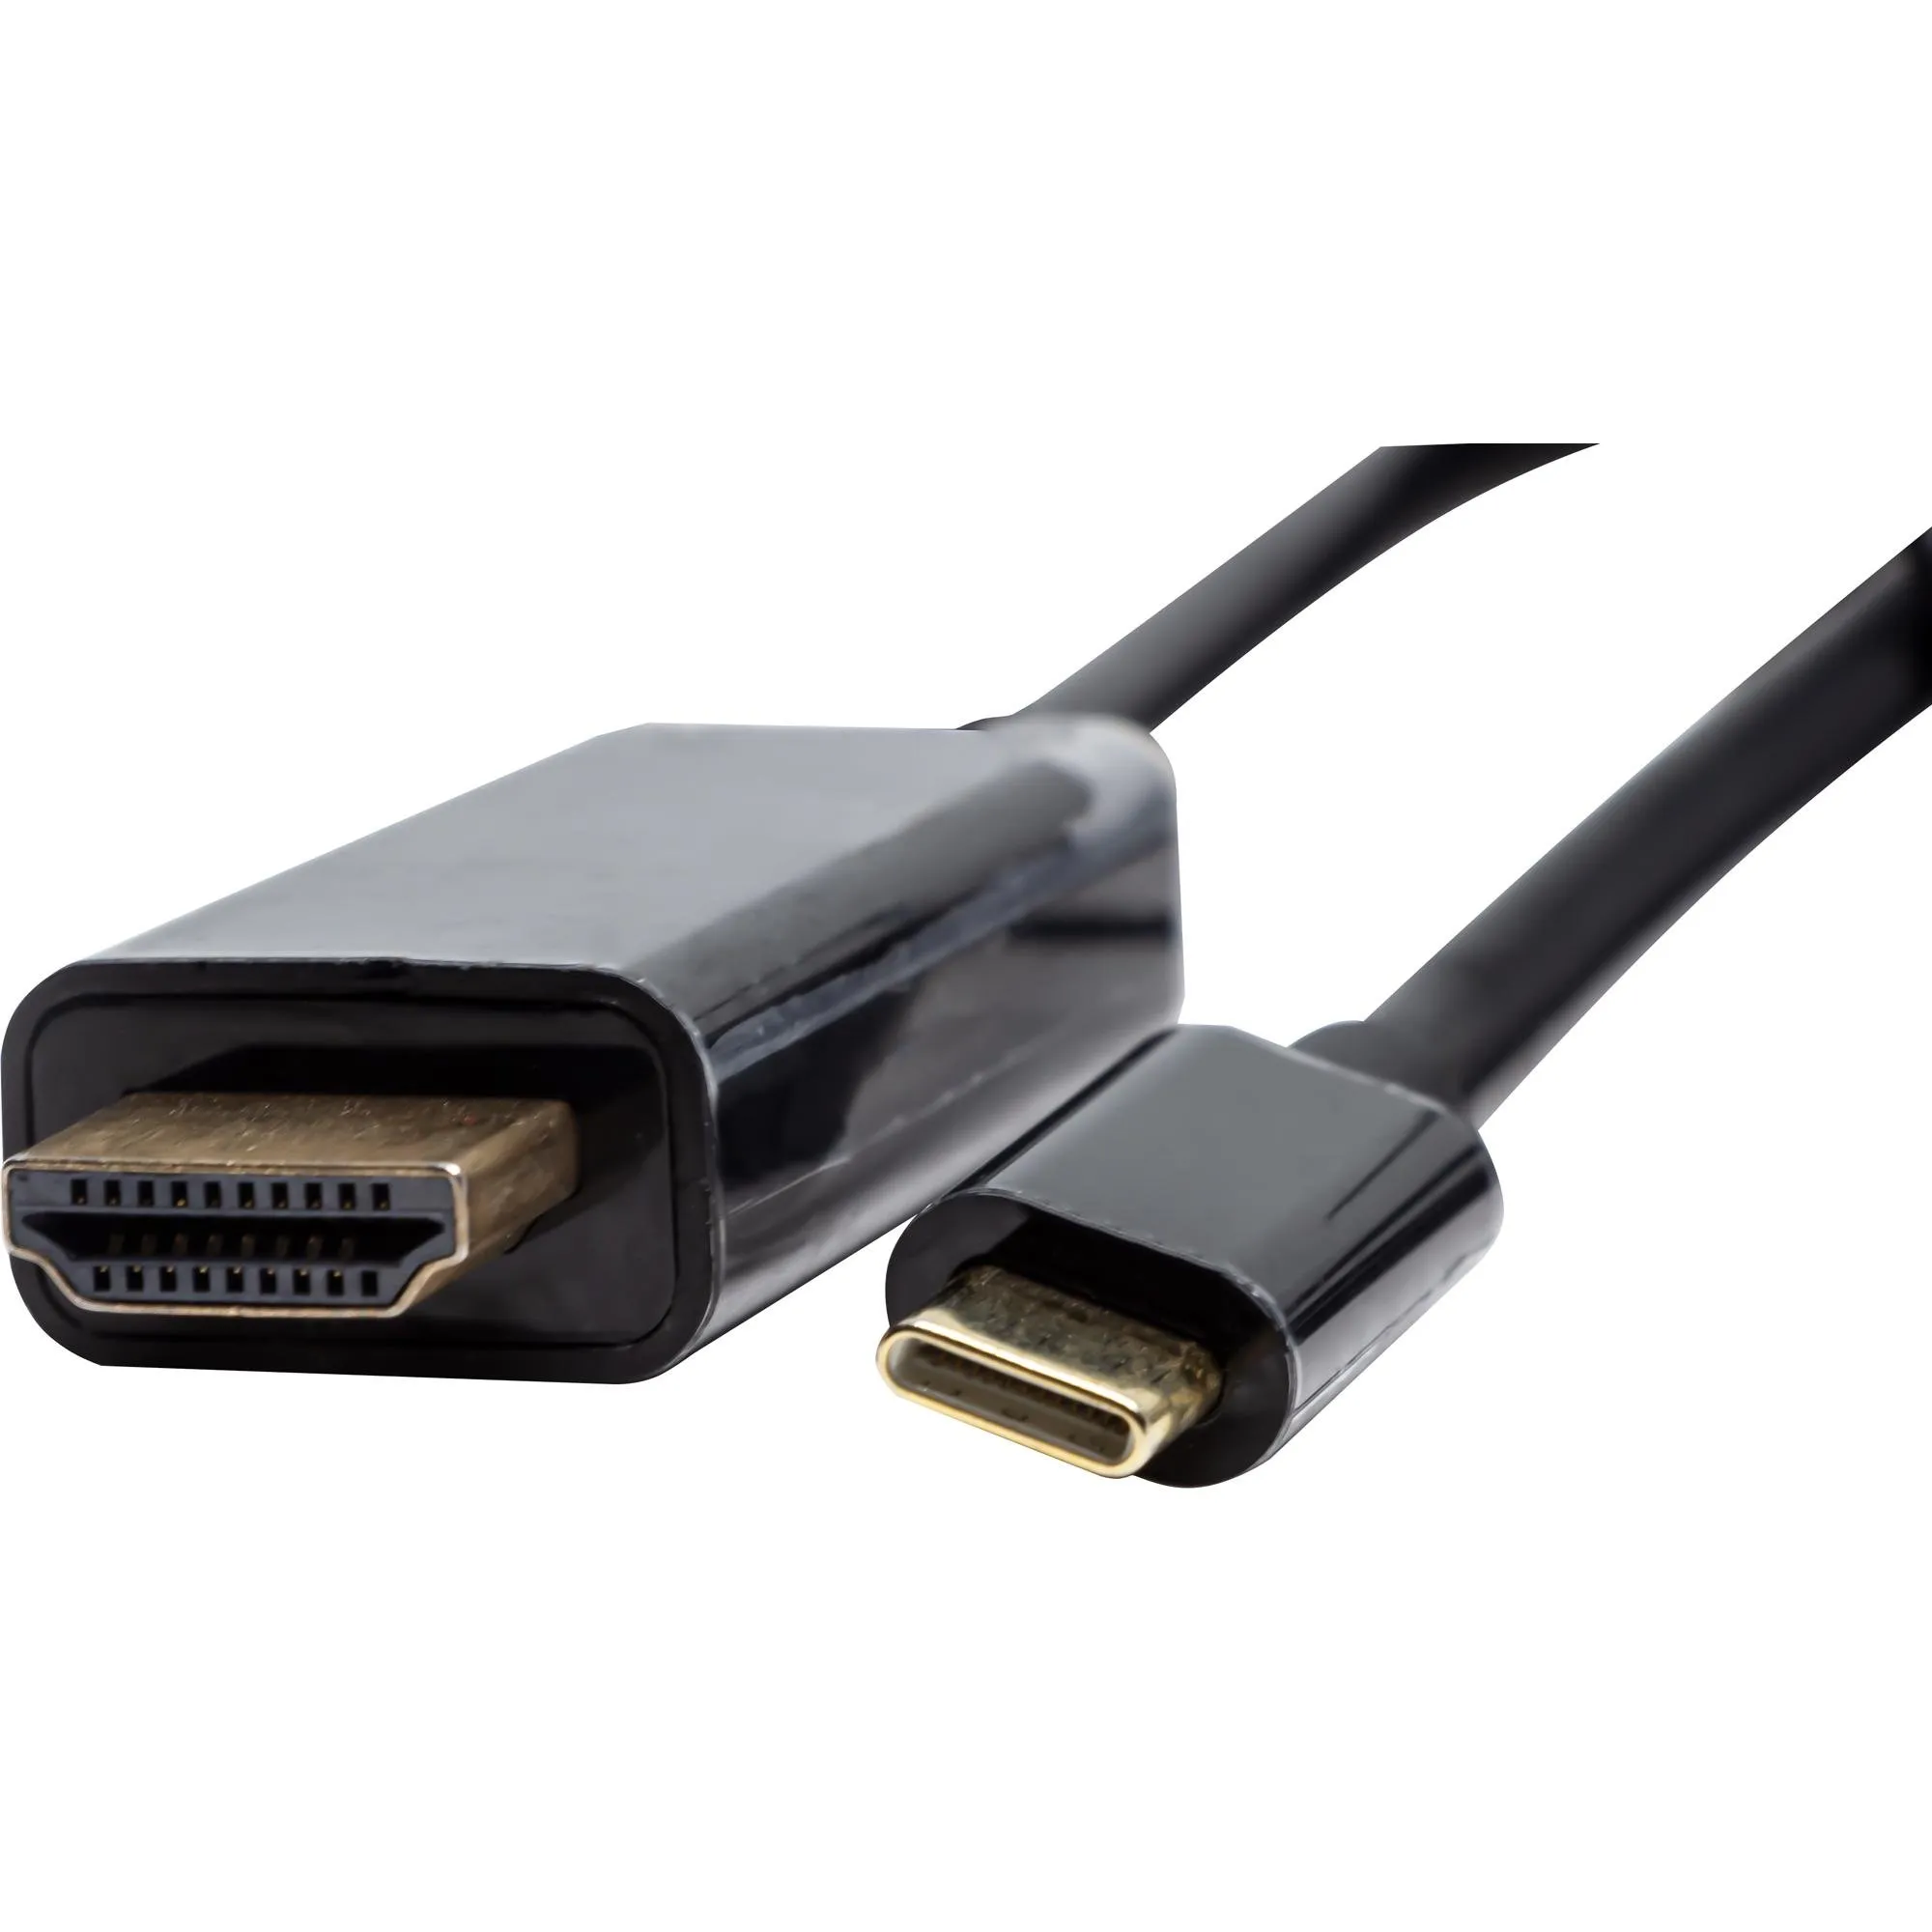 Cabo HDMI Macho 4k Para USB C 3.1 Storm por 0,00 à vista no boleto/pix ou parcele em até 1x sem juros. Compre na loja Mundomax!